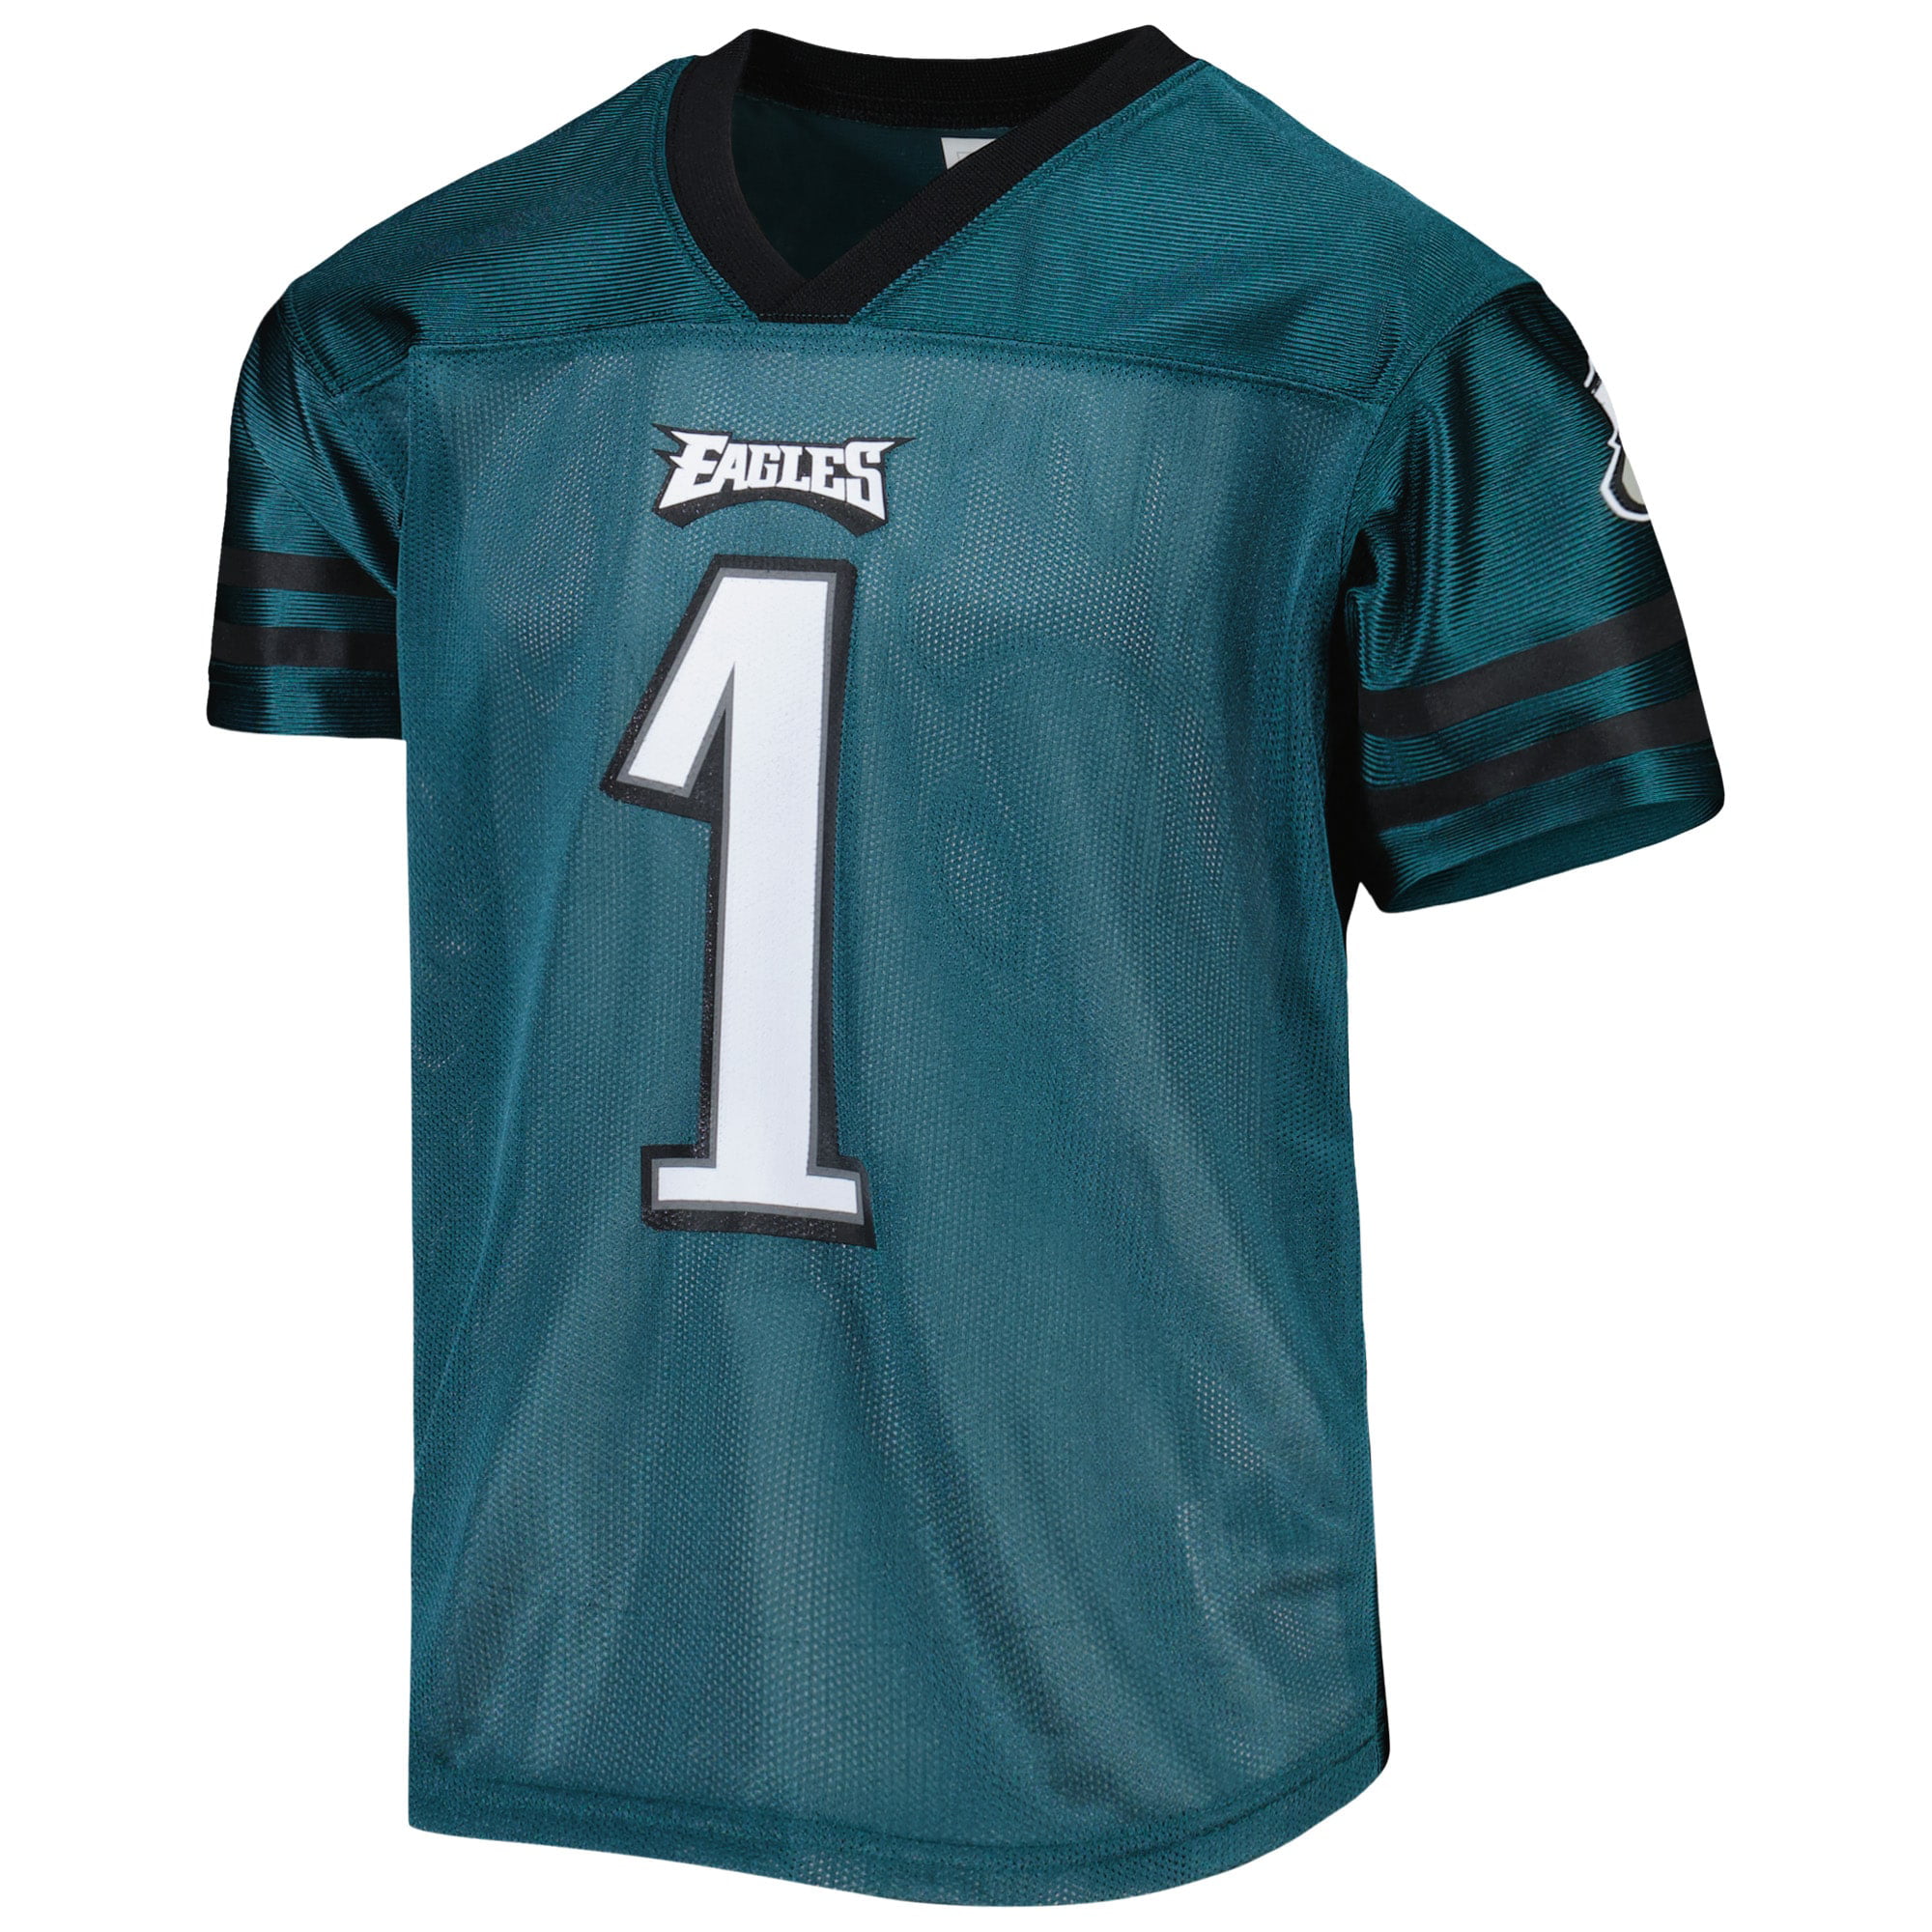 Eagles custom green jersey not ready, Jaguars will wear black